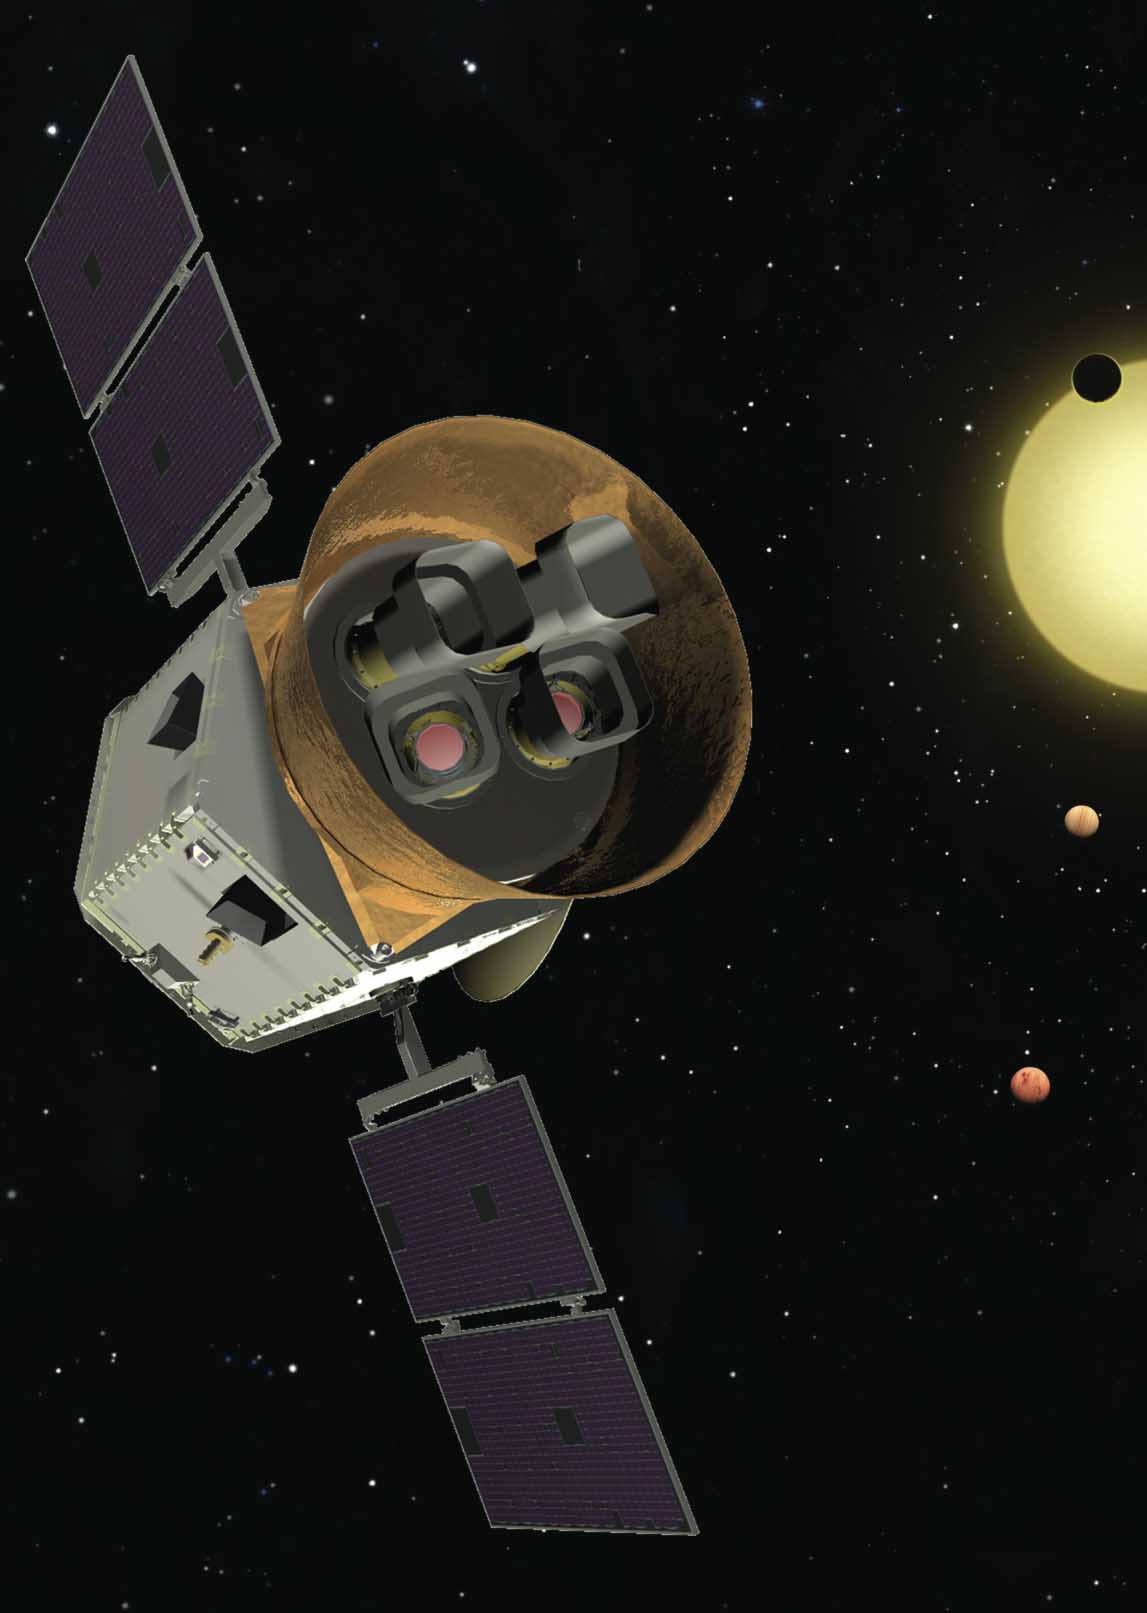 TESS - Transiting Exoplanet Survey Satellite